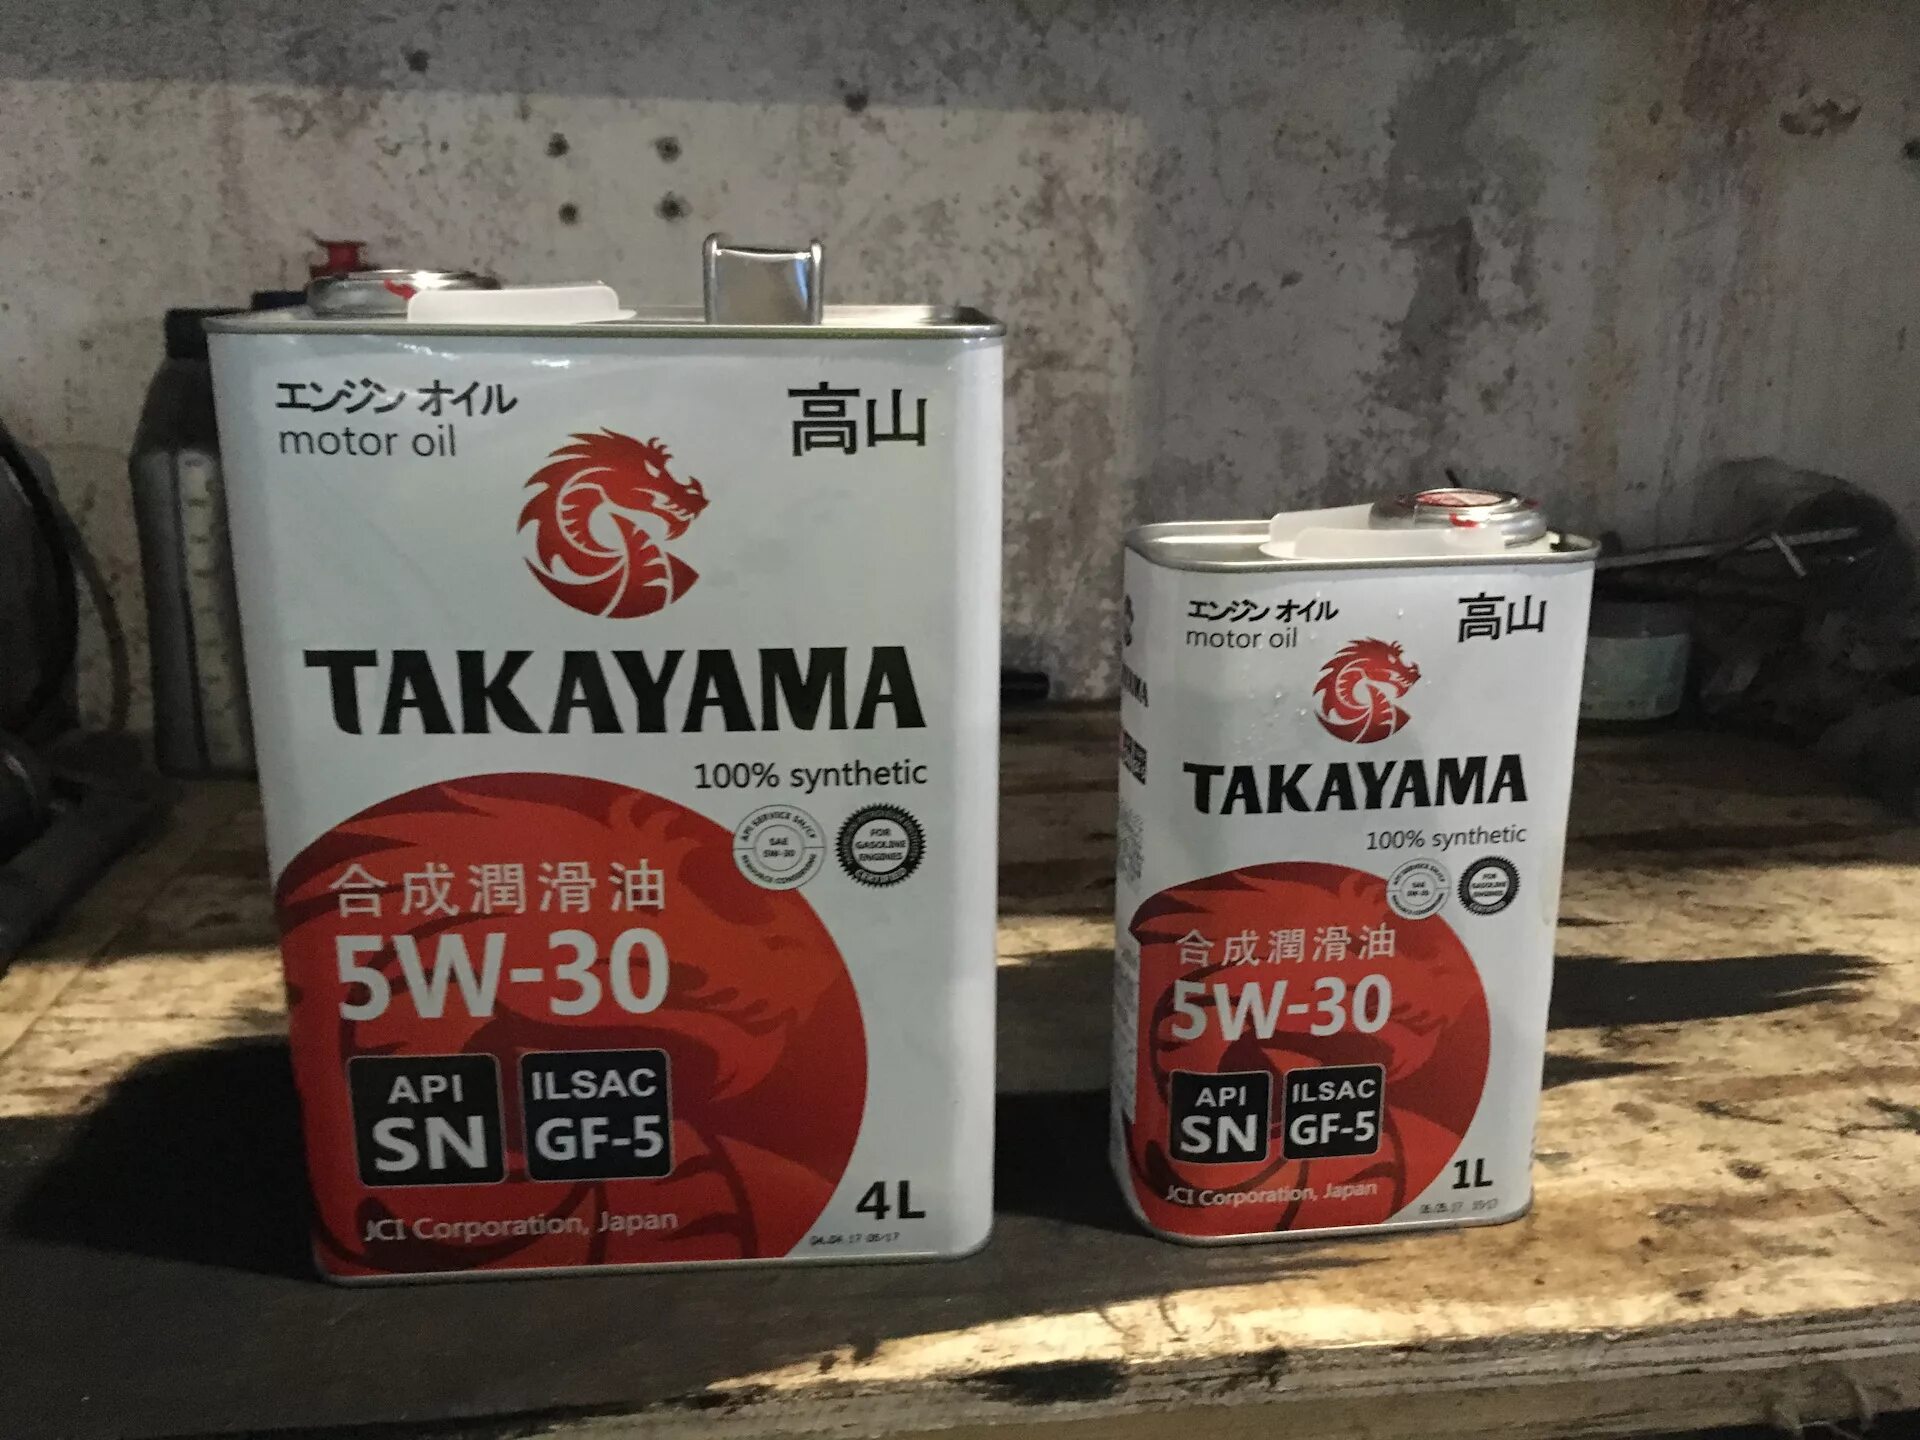 Купить моторное масло такаяма. Такаяма 5w30. Масло моторное Takayama 5w30. Японское моторное масло Takayama 5w30. Takayama 5w30 SN gf-5.